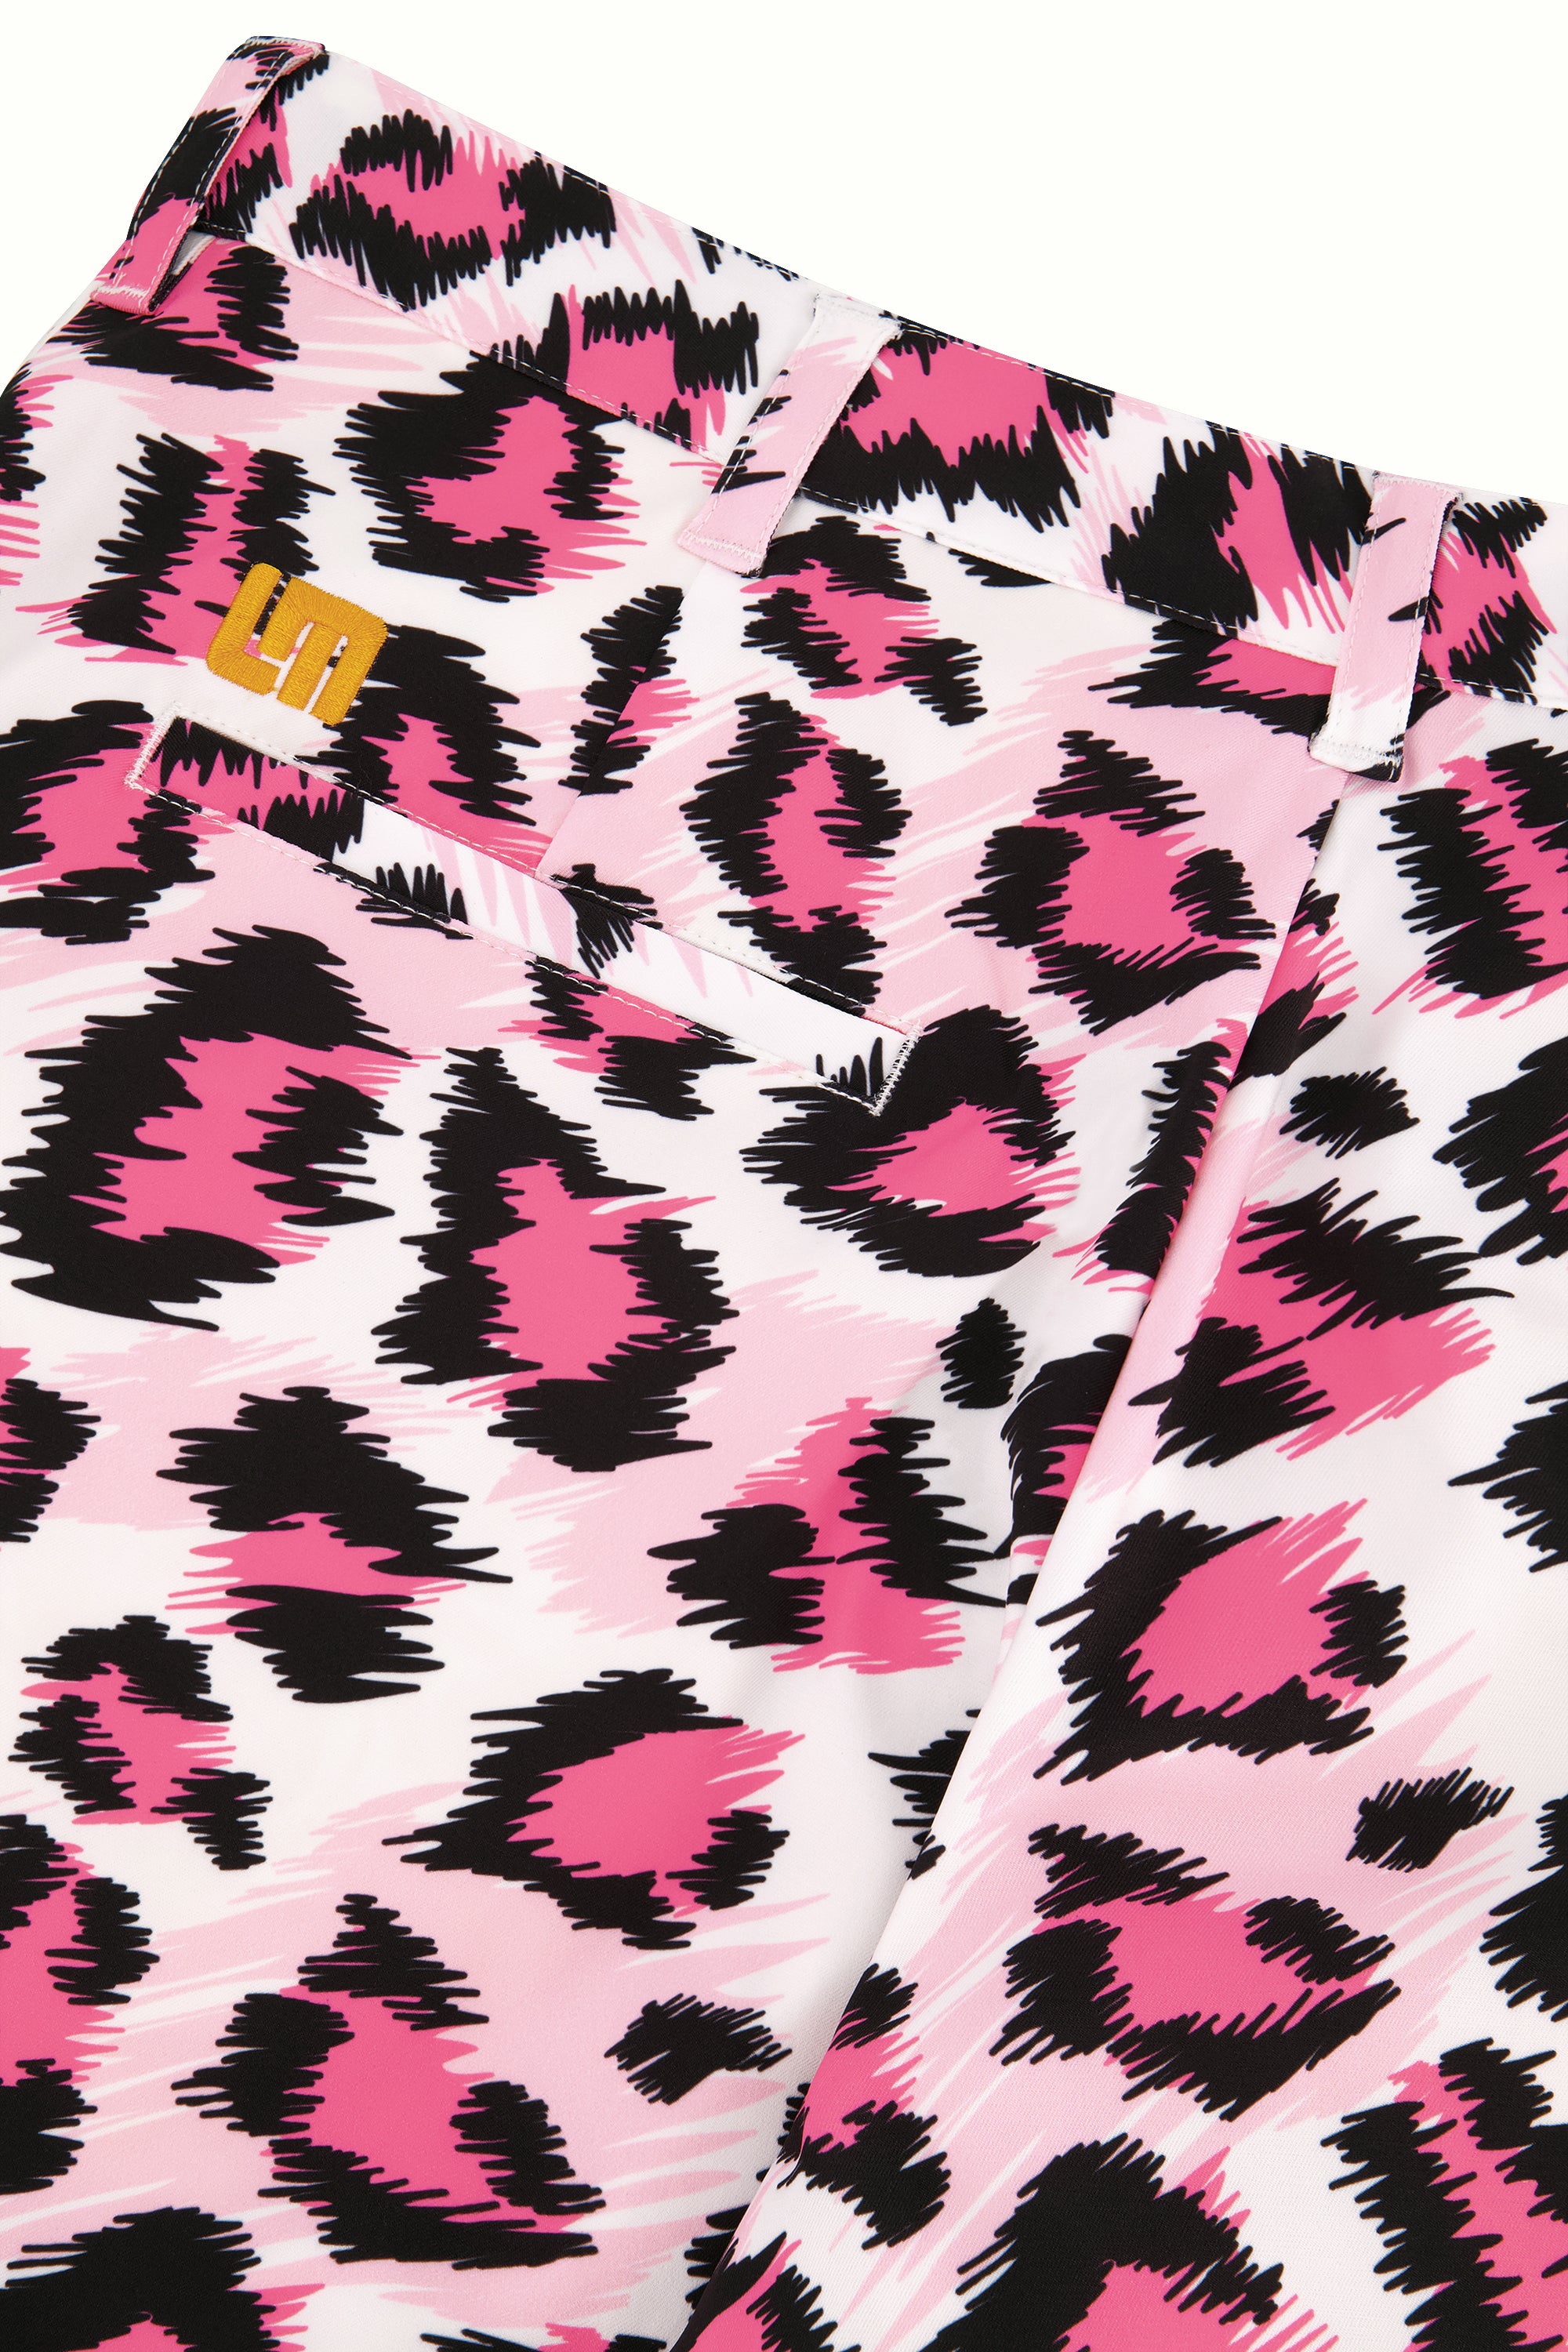 Heritage Short 9" - Pink Leopard